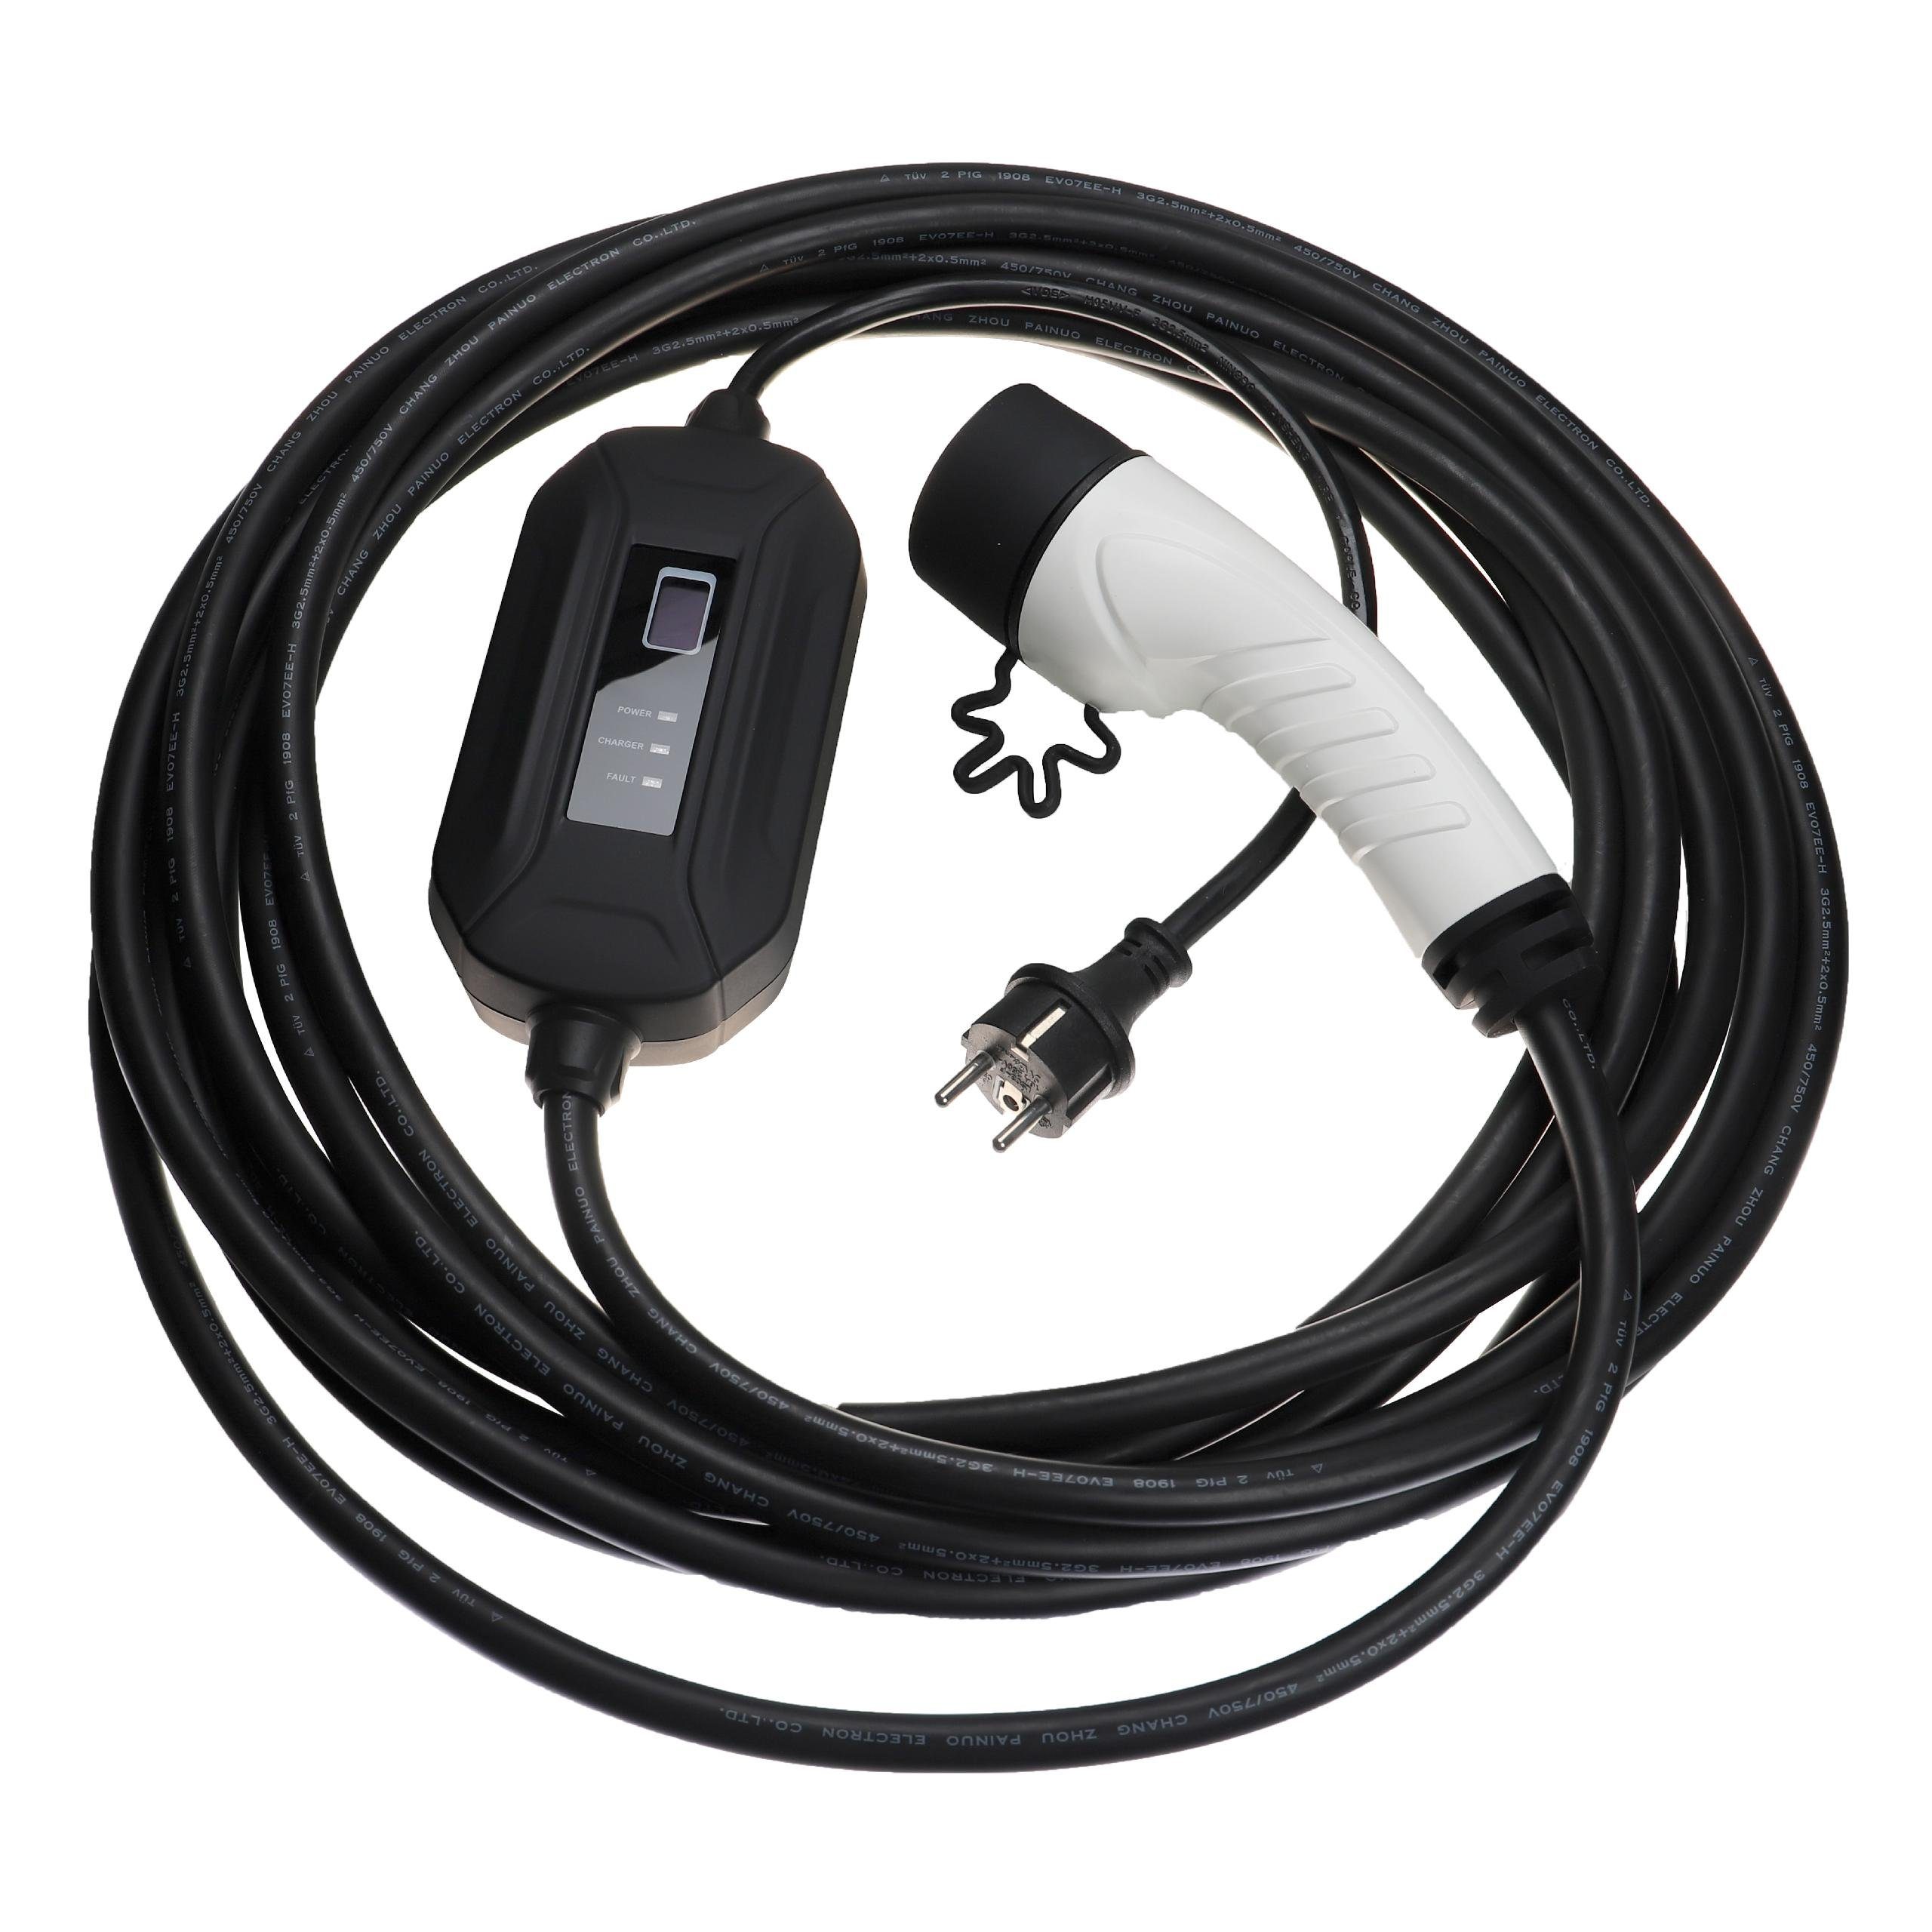 [Mit Bonus] vhbw passend für Mitsubishi Eclipse Elektro-Kabel In Hybrid Elektroauto / Plug